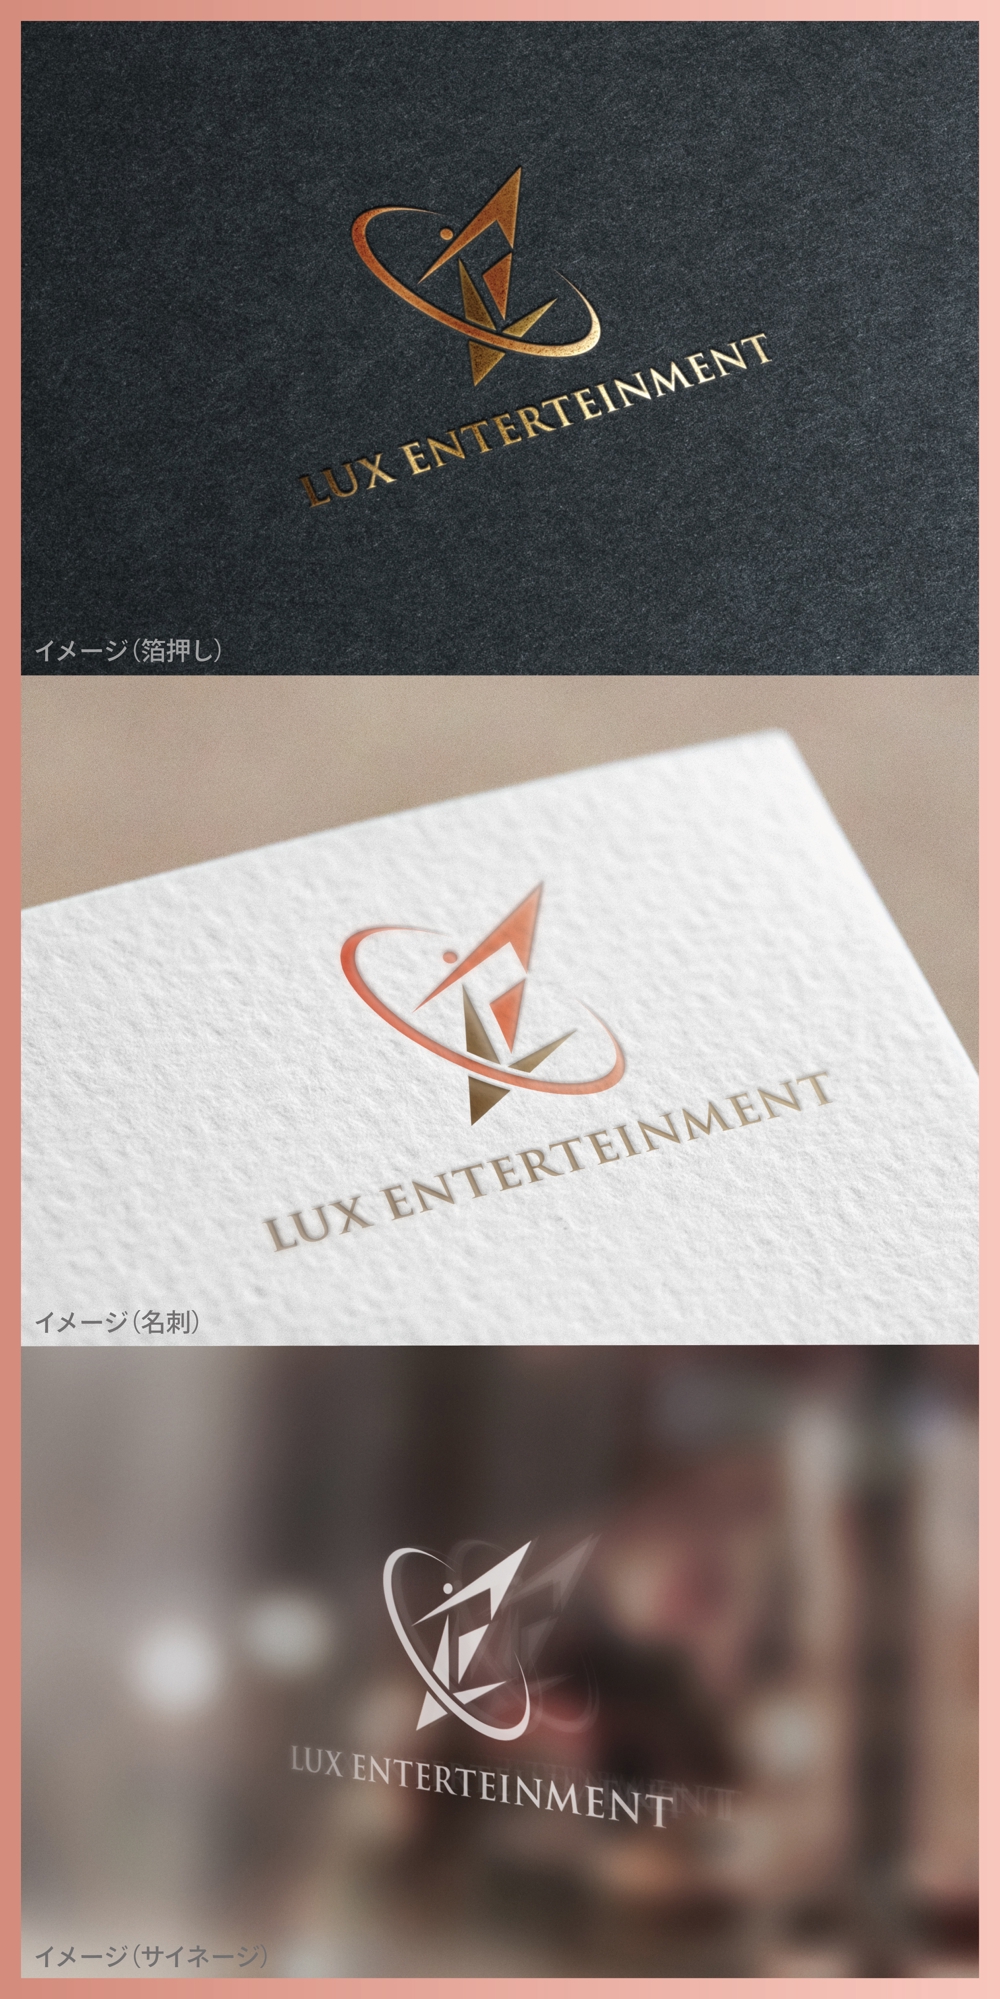 LUX ENTERTEINMENT_logo01_01.jpg